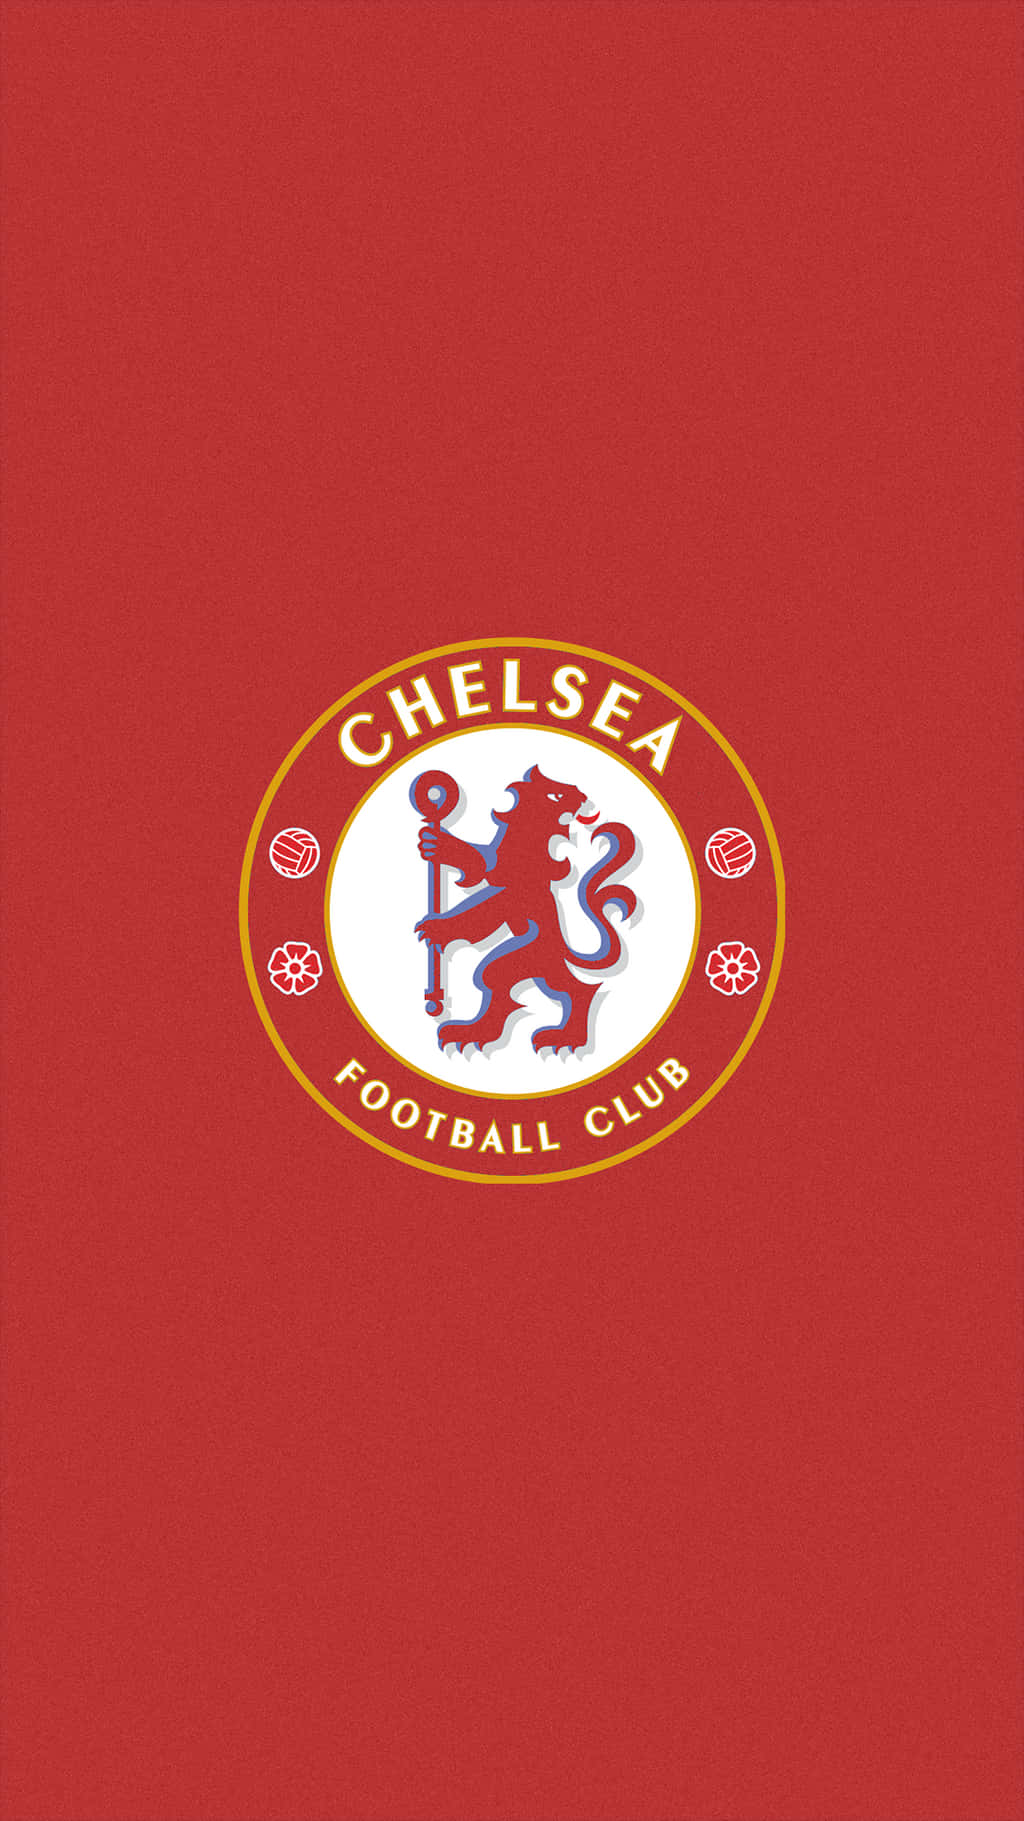 Chelsea Football Club logo på en rød baggrund Wallpaper